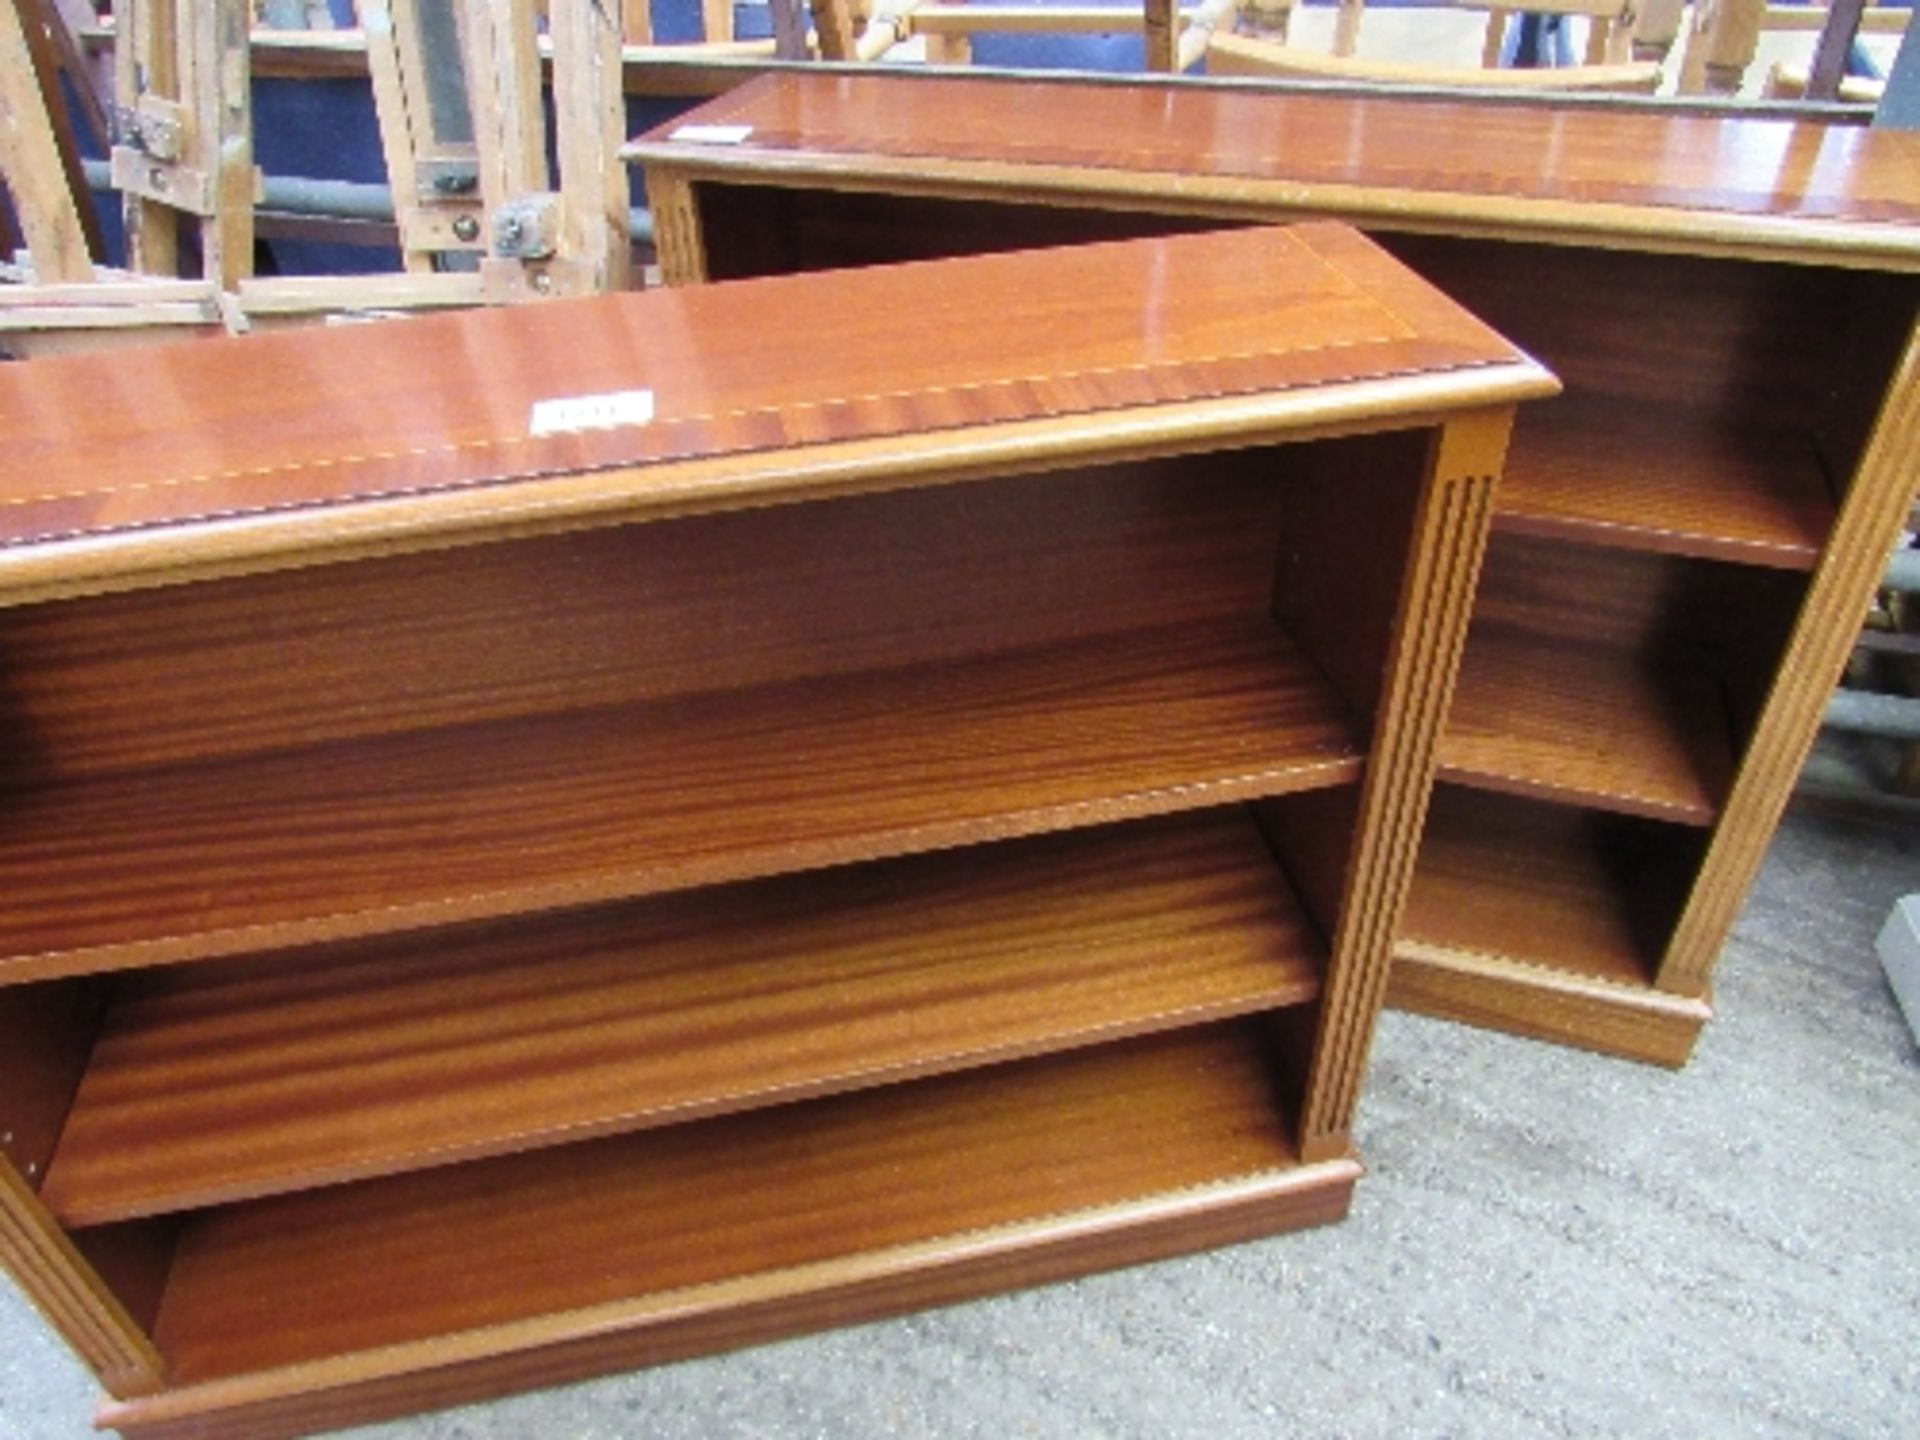 2 hardwood shelf units